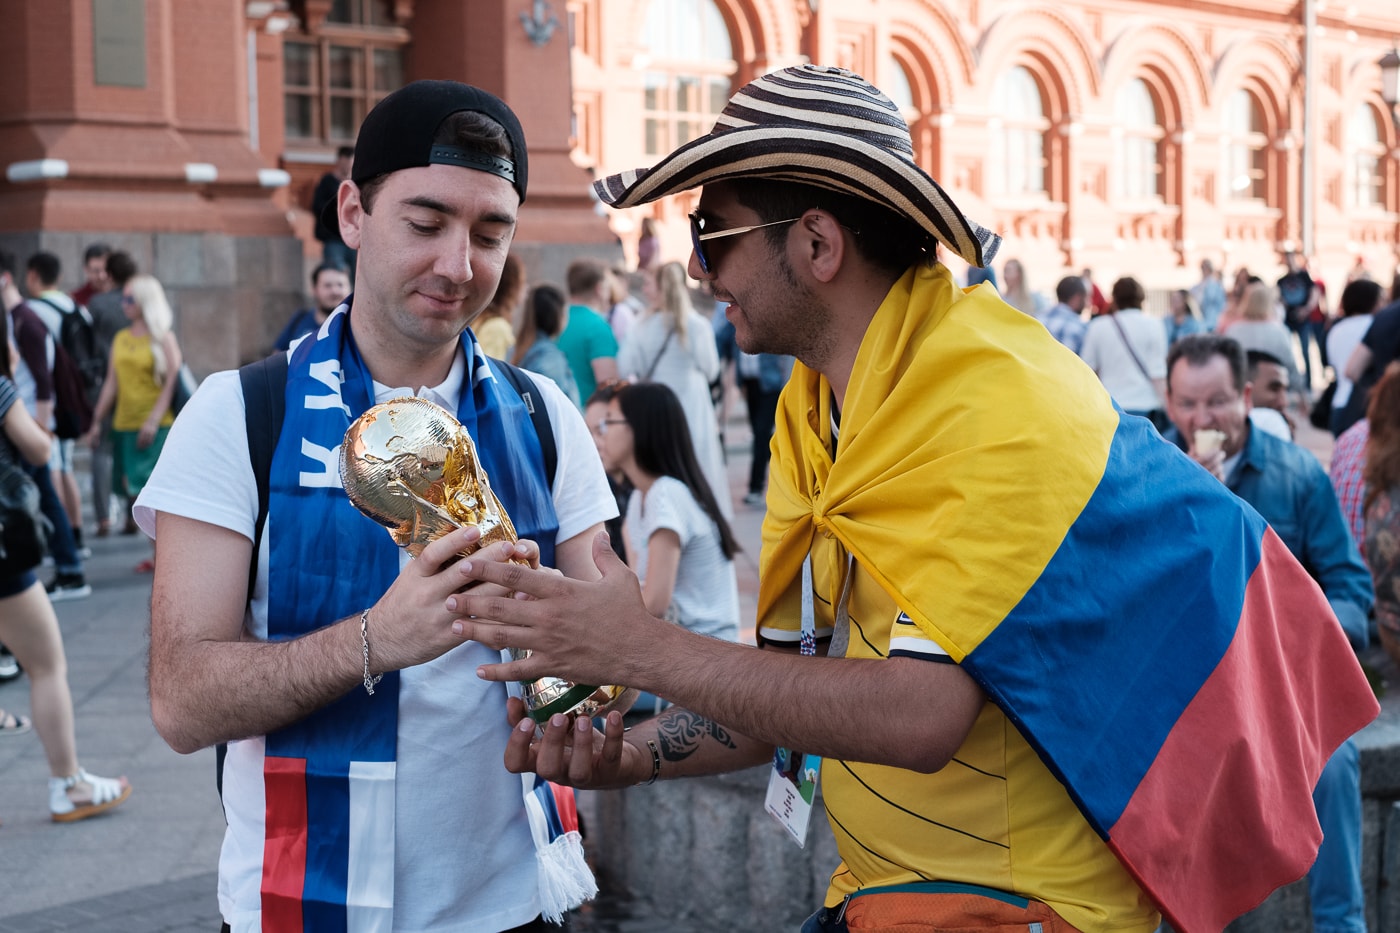 Streetsnaps 番外編：2018 FIFAワールドカップ ロシアよりモスクワの様子をお届け フットボールの祭典の開催地となったロシアの首都は開幕から休む間もなく終日お祭り騒ぎ ストリートスナップの番外編企画として、本稿では6月14日（木）より開幕した「2018 FIFAワールドカップ ロシア」より、モスクワの様子をお届け。開催国であるロシアが中東の雄サウジアラビアに5-0の快勝劇を披露したことで、首都のボルデージは一気に加熱。また、優勝候補の一角であるドイツをメキシコが下した一戦では、同国の首都メキシコシティで“人為的な地震”が観測されるほど、世界は今、4年に一度のフットボールの祭典に全視線が注がれている。  マネージュ広場やニコルスカヤ通りで敢行したストリートスナップは、試合毎に景色が変わっていく。南米の国家の対戦がある際にはまるでお祭りかのごとく陽気な雰囲気に包まれる一方、フットボールを見る目が肥えたヨーロッパの強豪国が登場すれば、人々がスタジアムさながらのテンションで一喜一憂する。  サッカー好きか否かに問わず、是非上のフォトギャラリーからフットボールに酔いしれるモスクワの様子をチェックしてみてほしい。  また、勝色を纏う選手たちの“覚悟”を収録した応援への士気を高める日本代表の特別ドキュメンタリー“勝色 THE NEW STORY 3”もお見逃しなく。